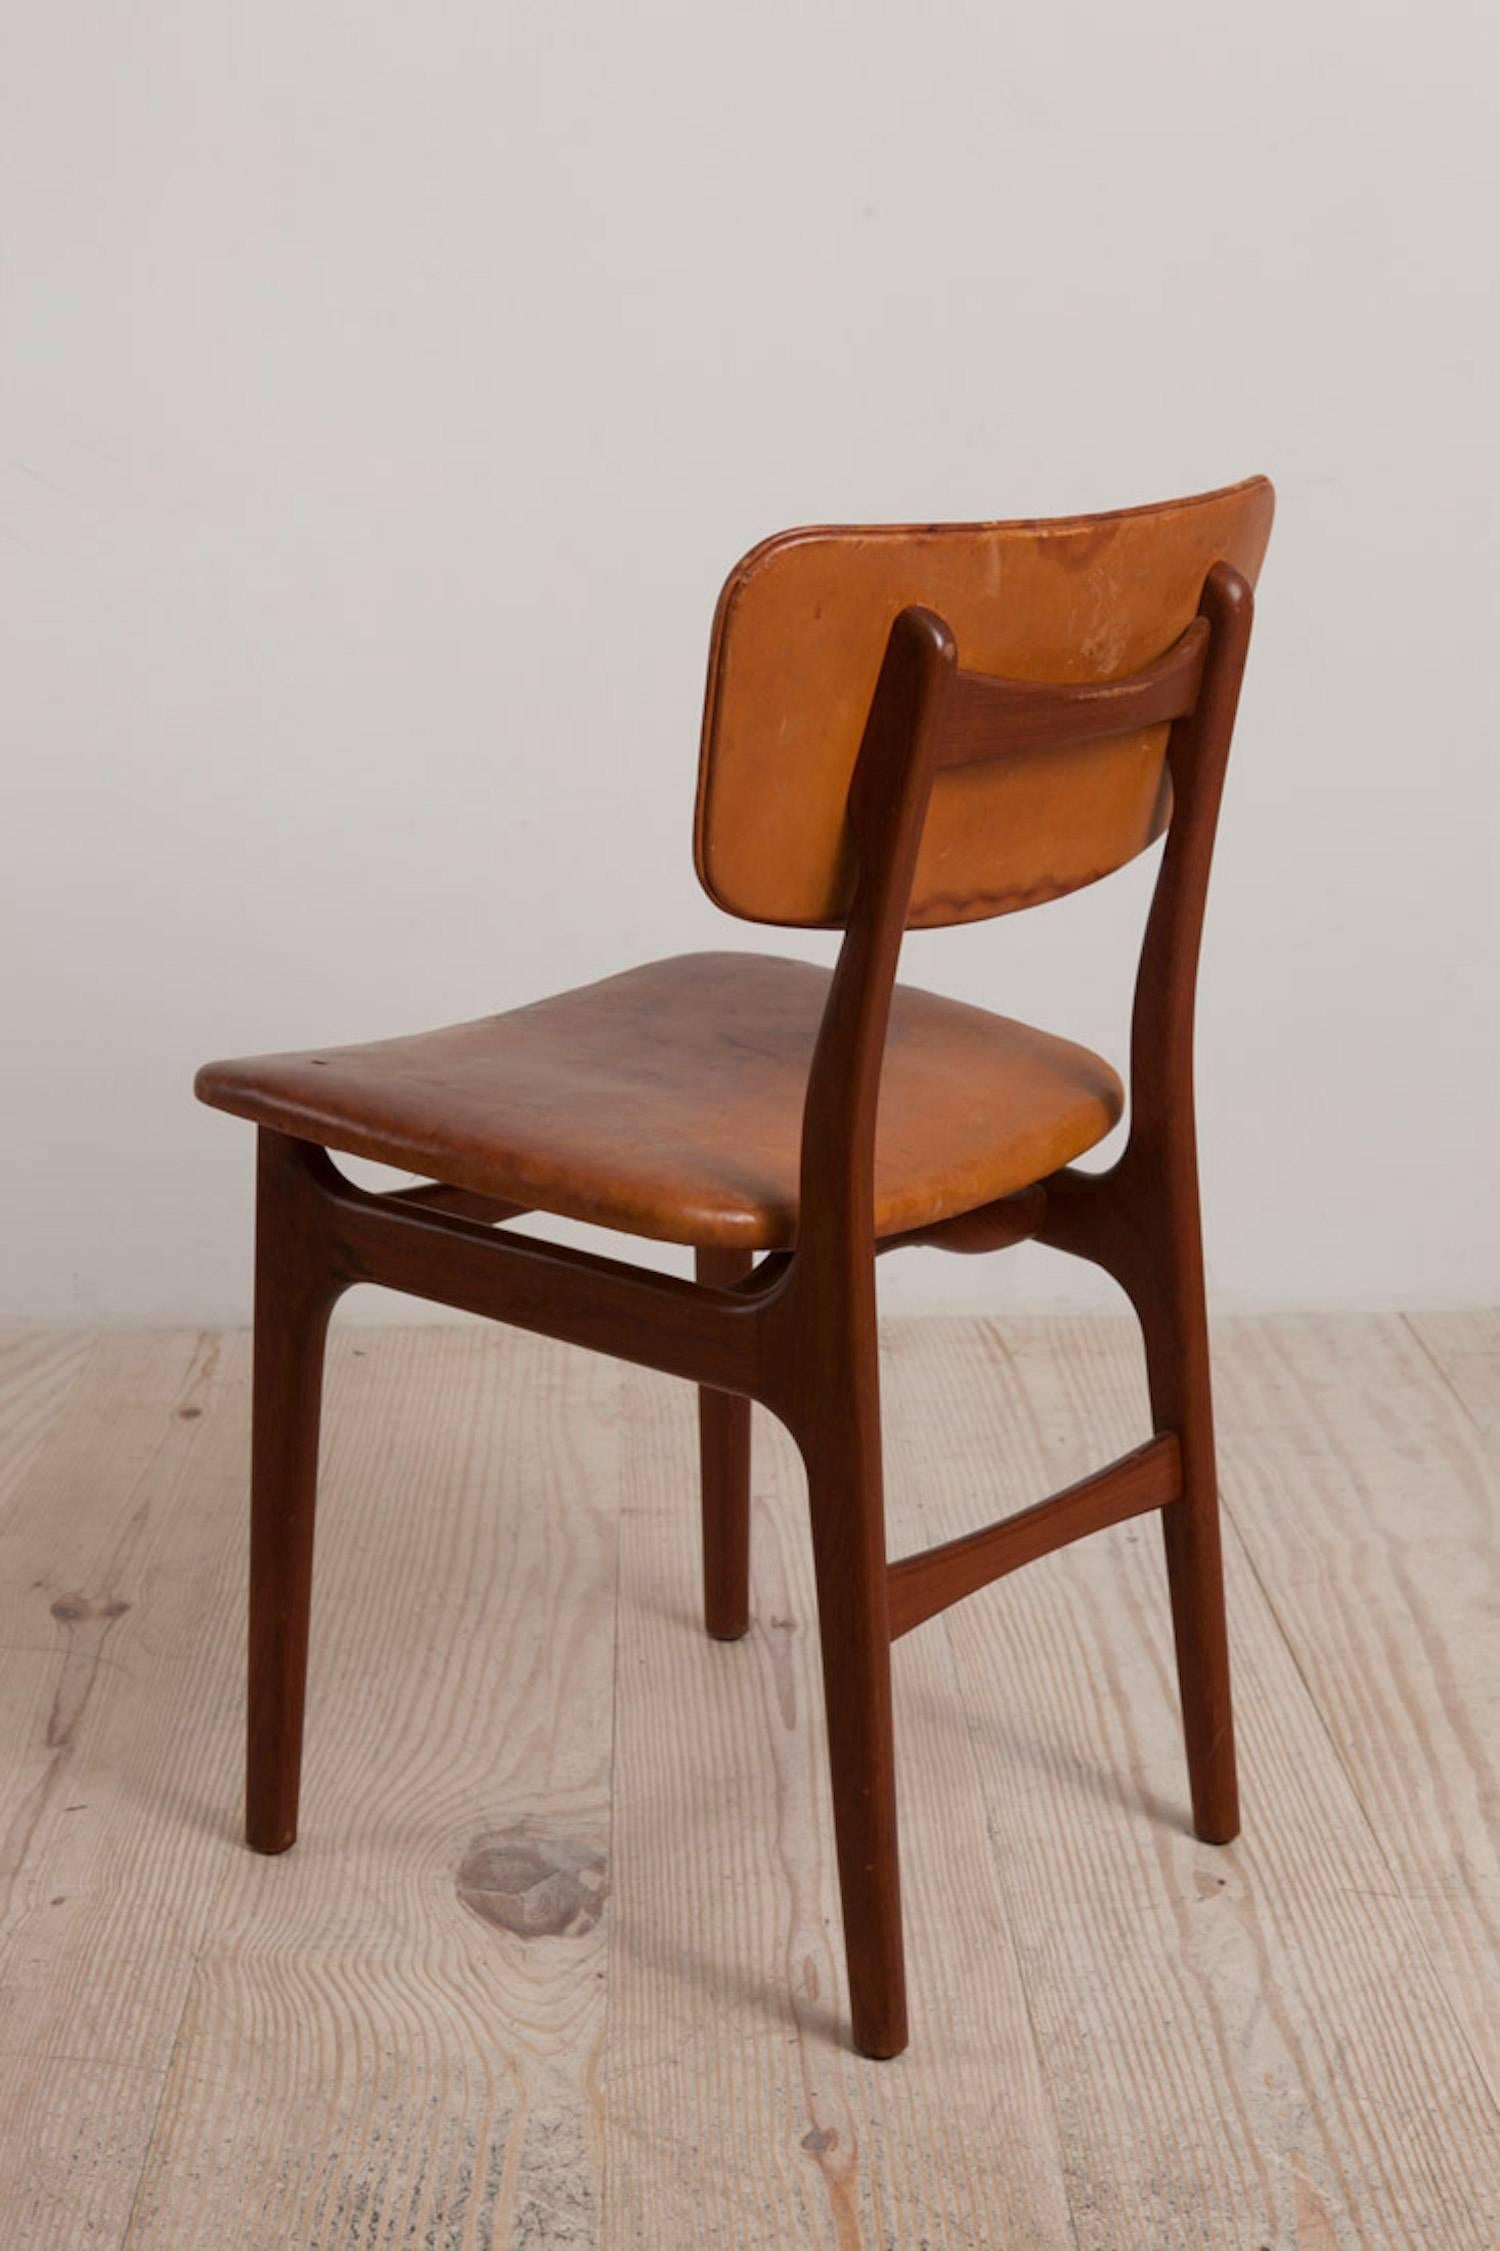 Gustav Bertelsen, Danish craftsman chair, mahogany and original leather, circa 1940, with original label: GUSTAV BERTELSEN / Snedkermester / København / Denmark.

Very comfortable; great desk chair.